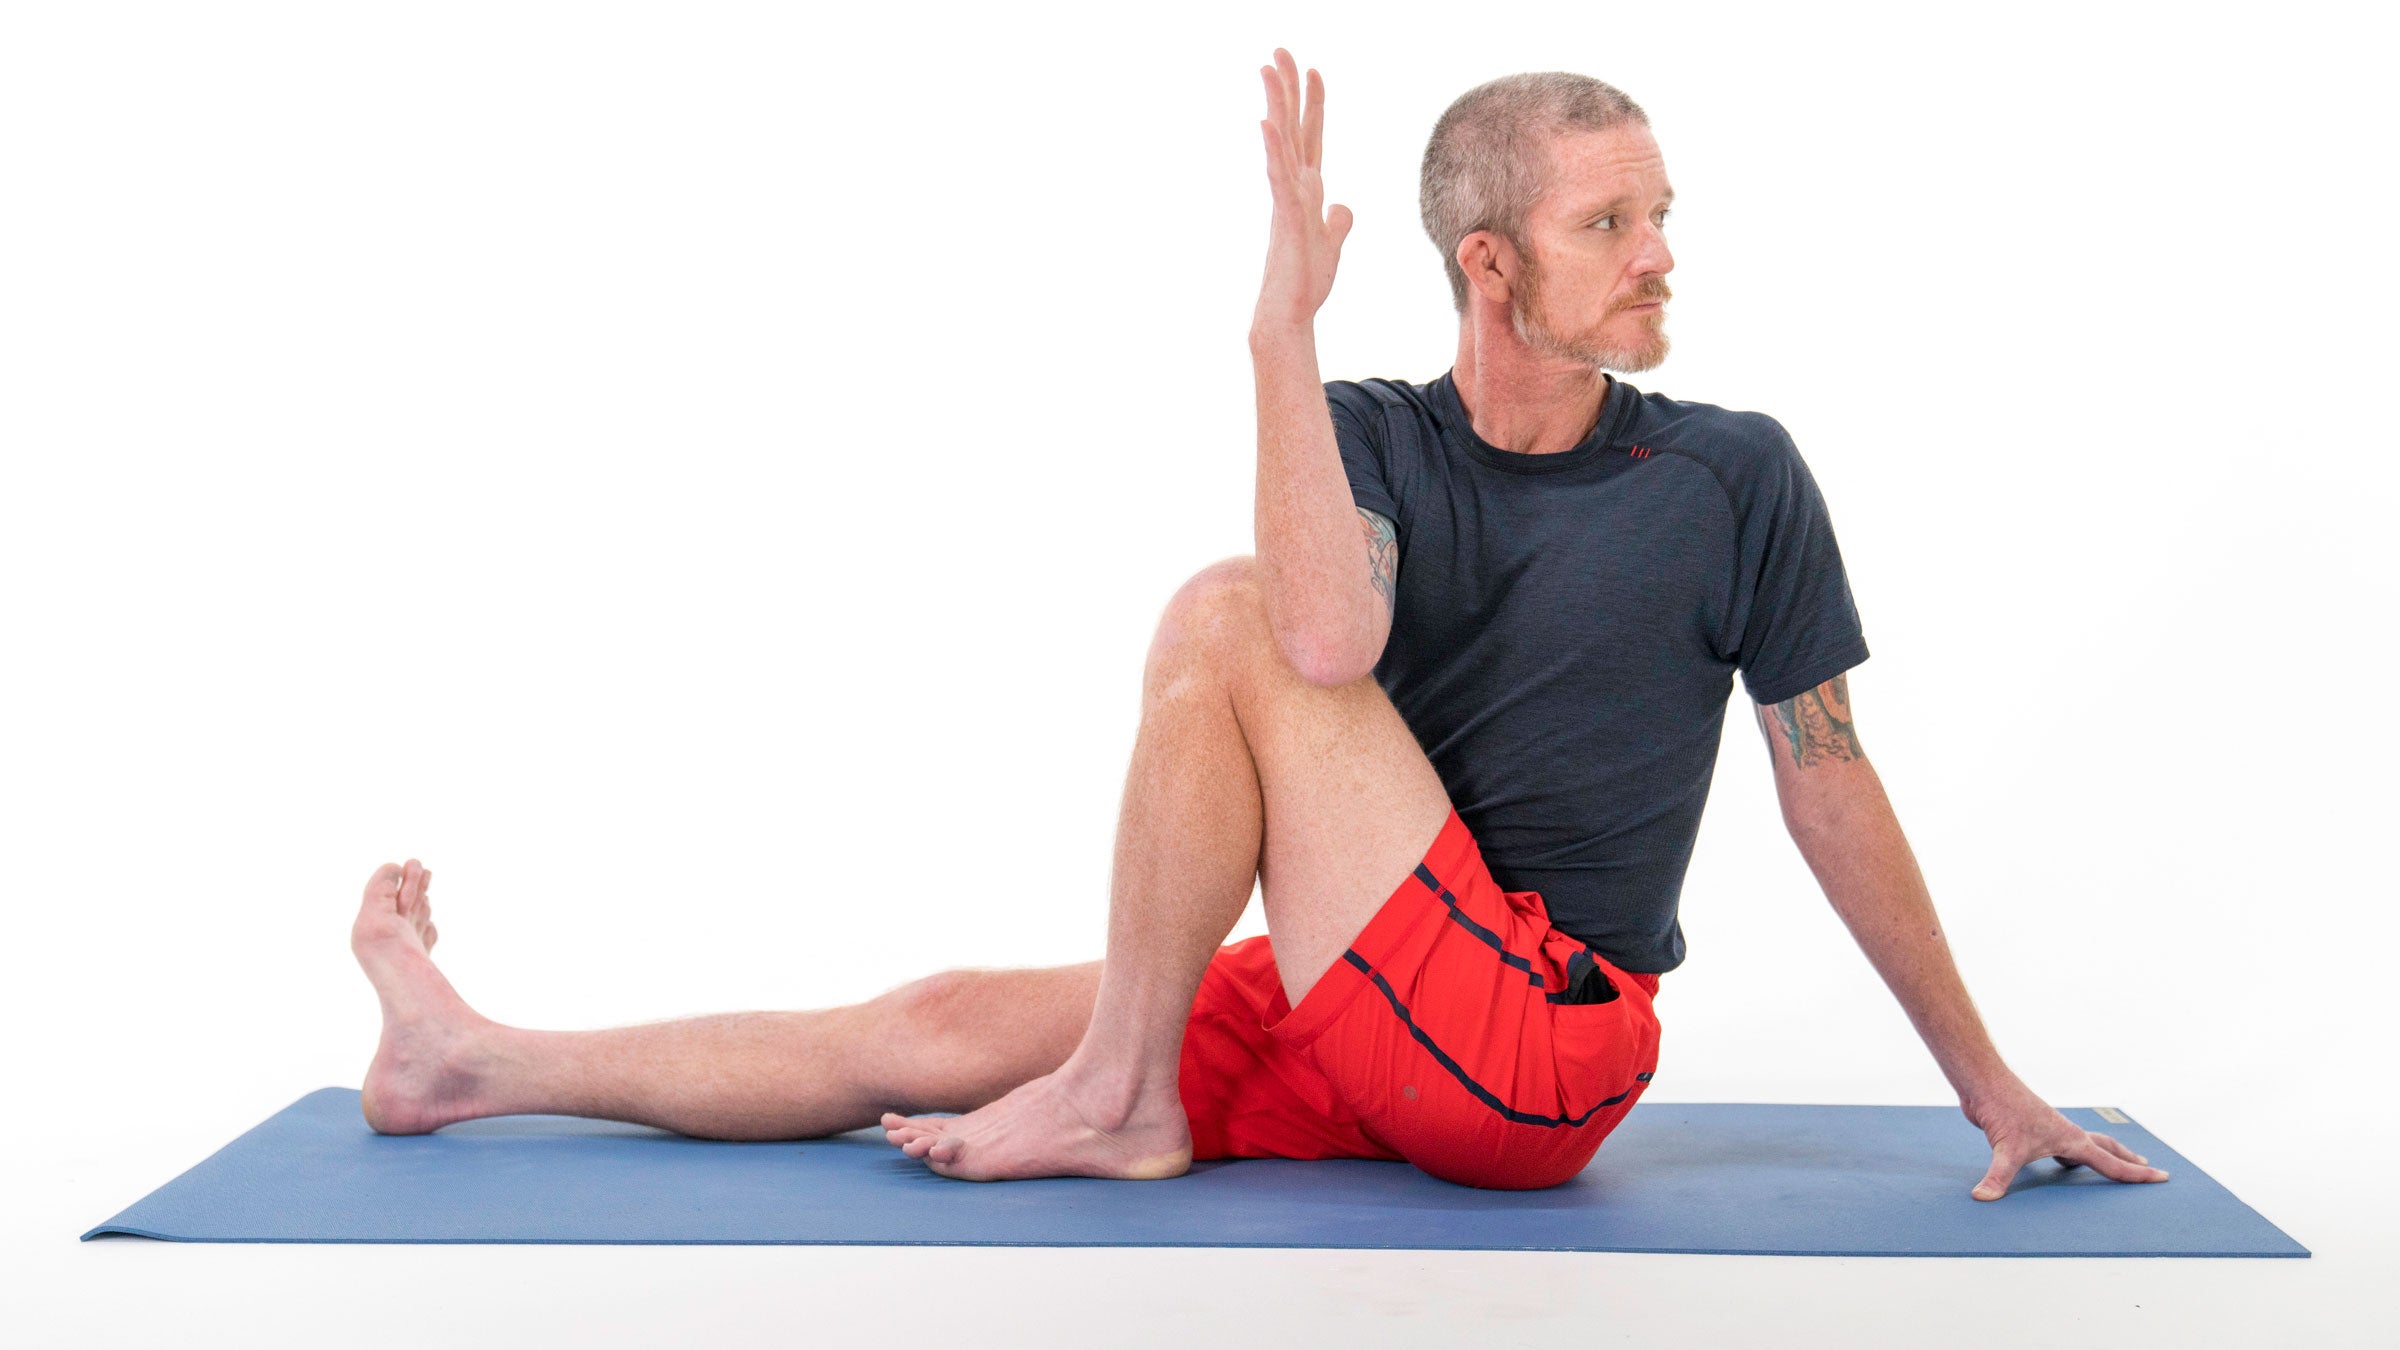 3 Best Beginner Friendly Yoga Poses for Lower Back Pain